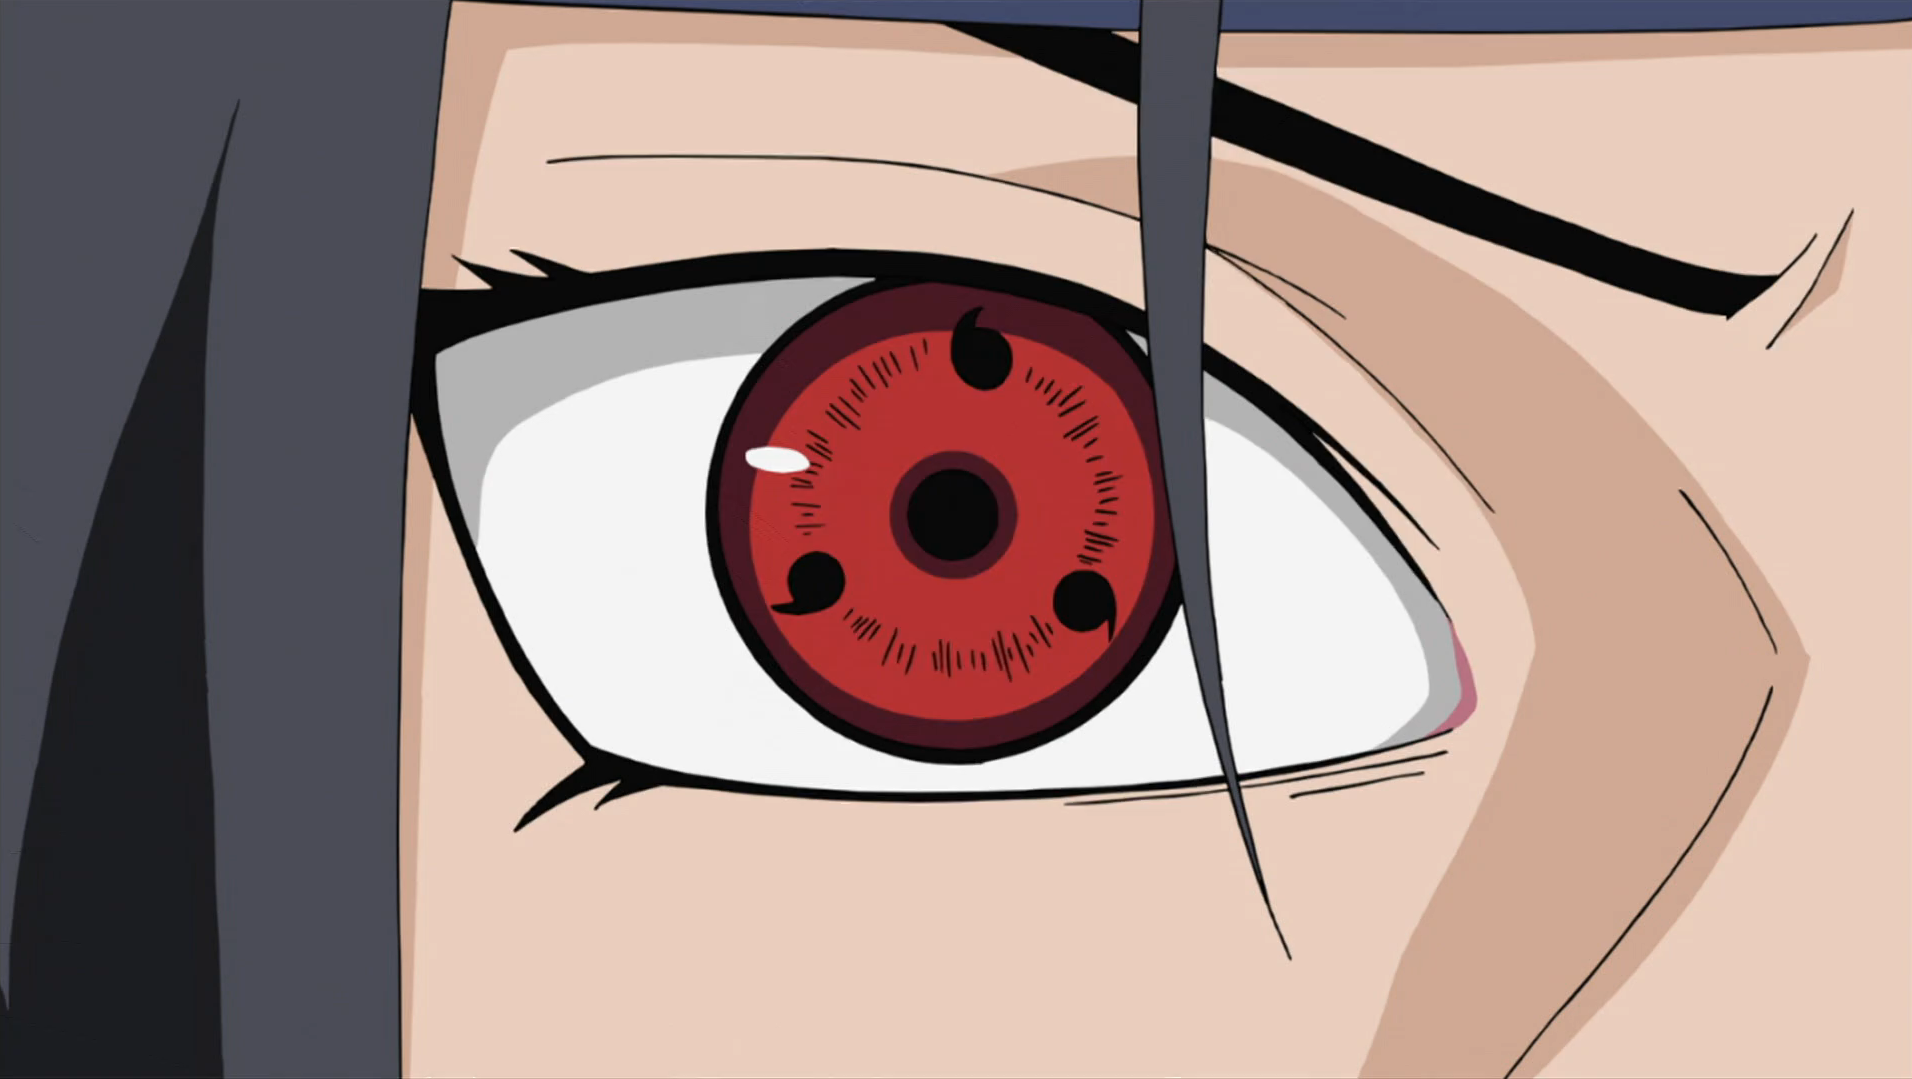 Dojutsu Clan Uchiha Anime Naruto Akatsuki, Anime, manga, cartoon, eye png